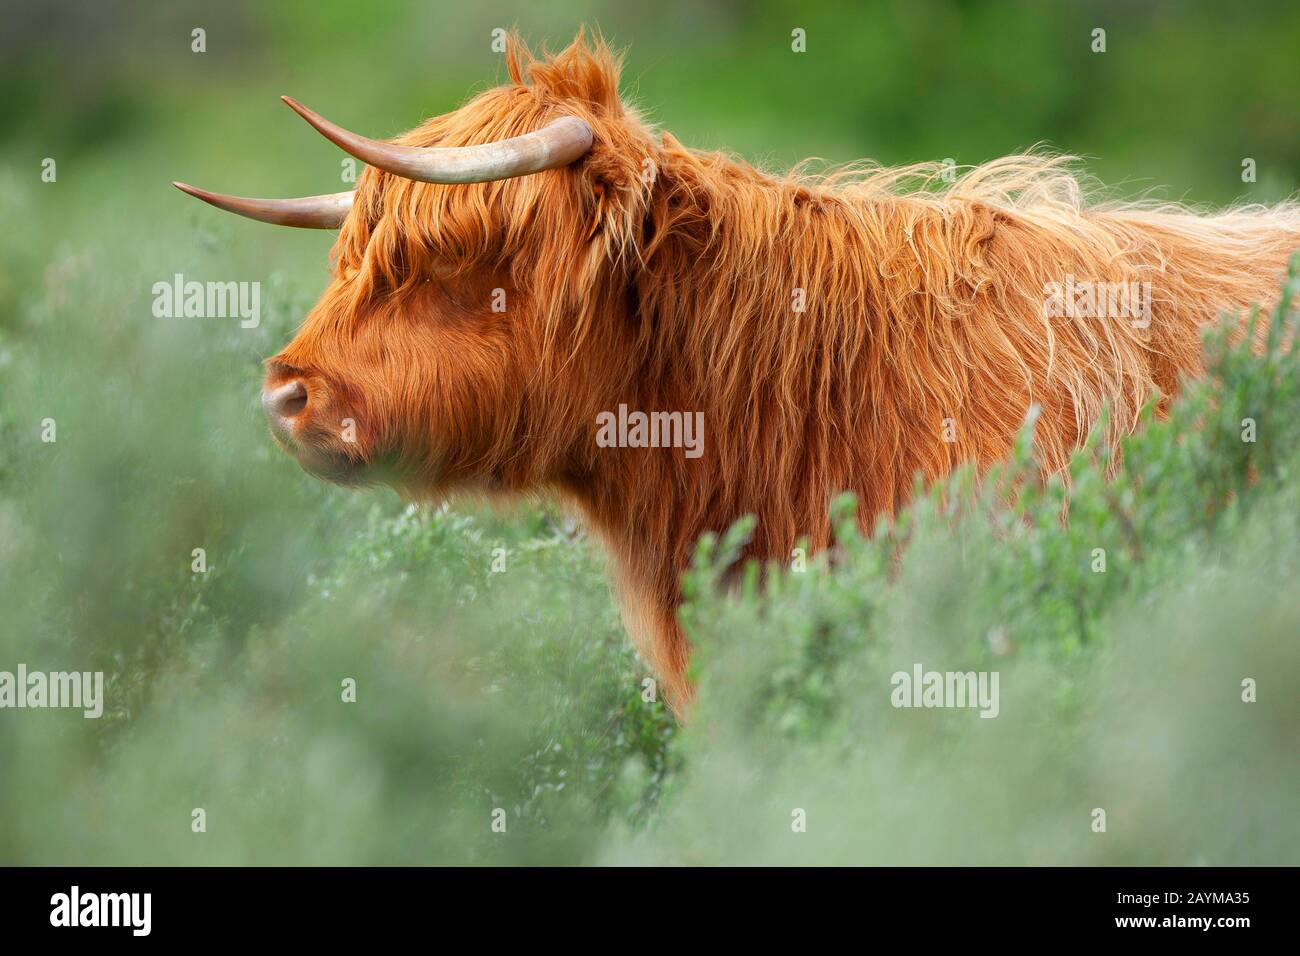 Scottish Highland Cattle, Kyloe, Highland vache, Heelan coo (Bos primigenius F. taurus), portrait, Belgique, Flandre Occidentale, de Westhoek, de panne Banque D'Images